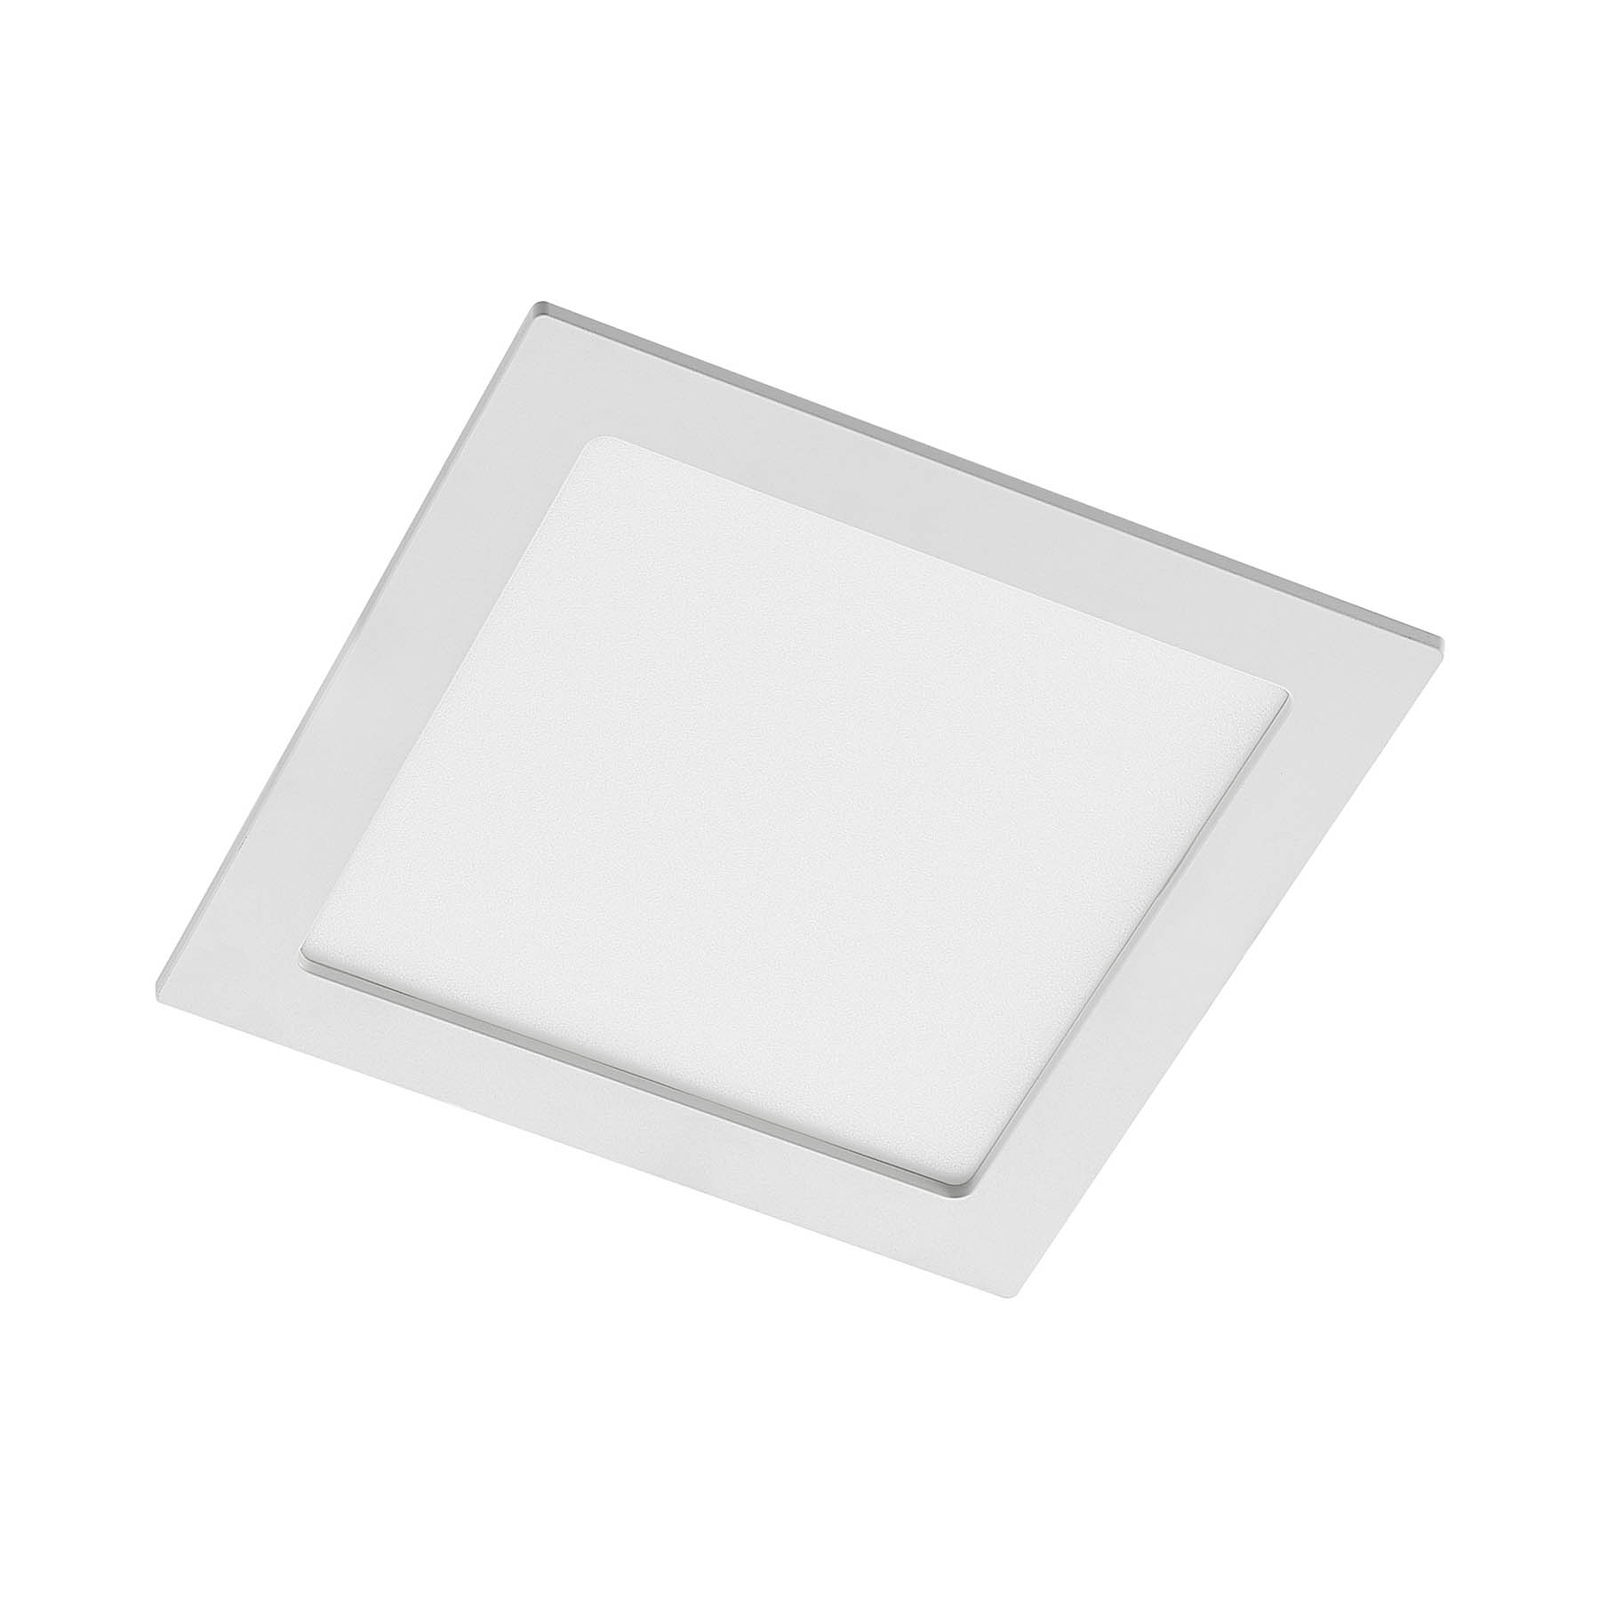 Prios LED-Einbaulampe Helina, weiß, 22 cm, 18 W, dimmbar